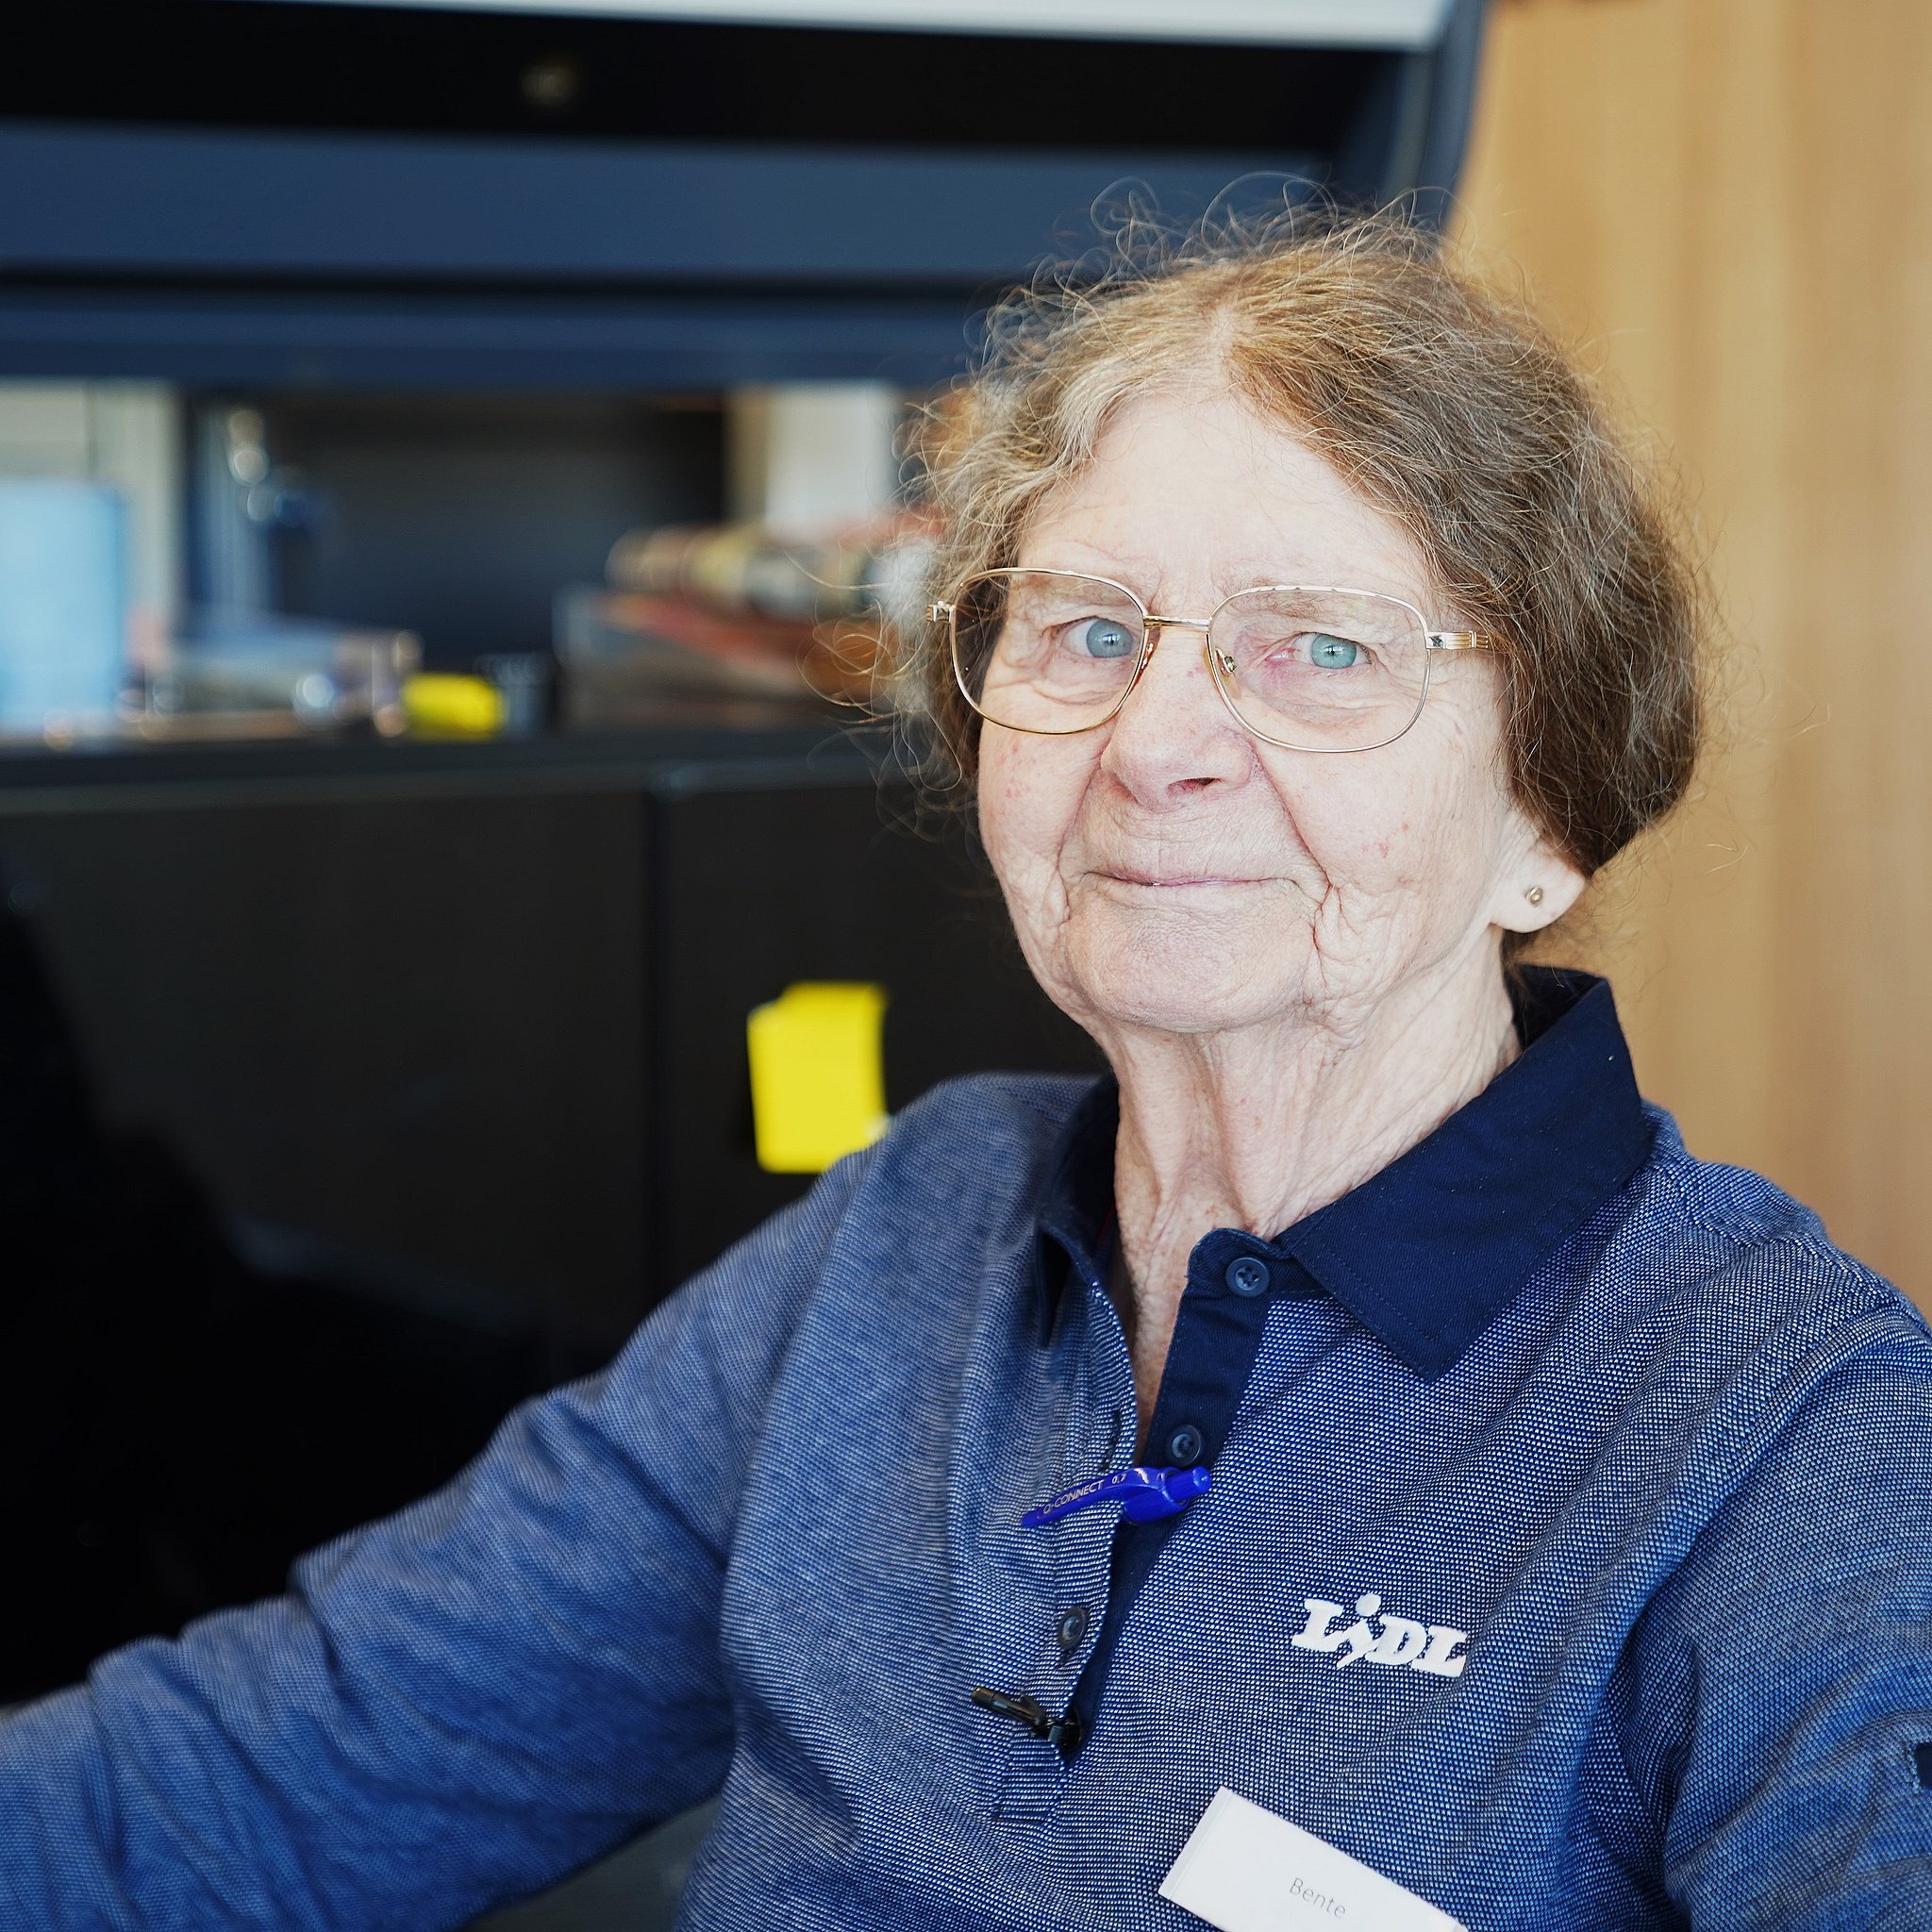 81-årige Bente Pedersen fra Hedensted fik sit første arbejde, da hun var ni år gammel. Siden da har hun været aktiv på arbejdsmarkedet og aldrig skænket pensionen en tanke. I dag arbejder hun ugentligt to dage i den lokale Lidl.